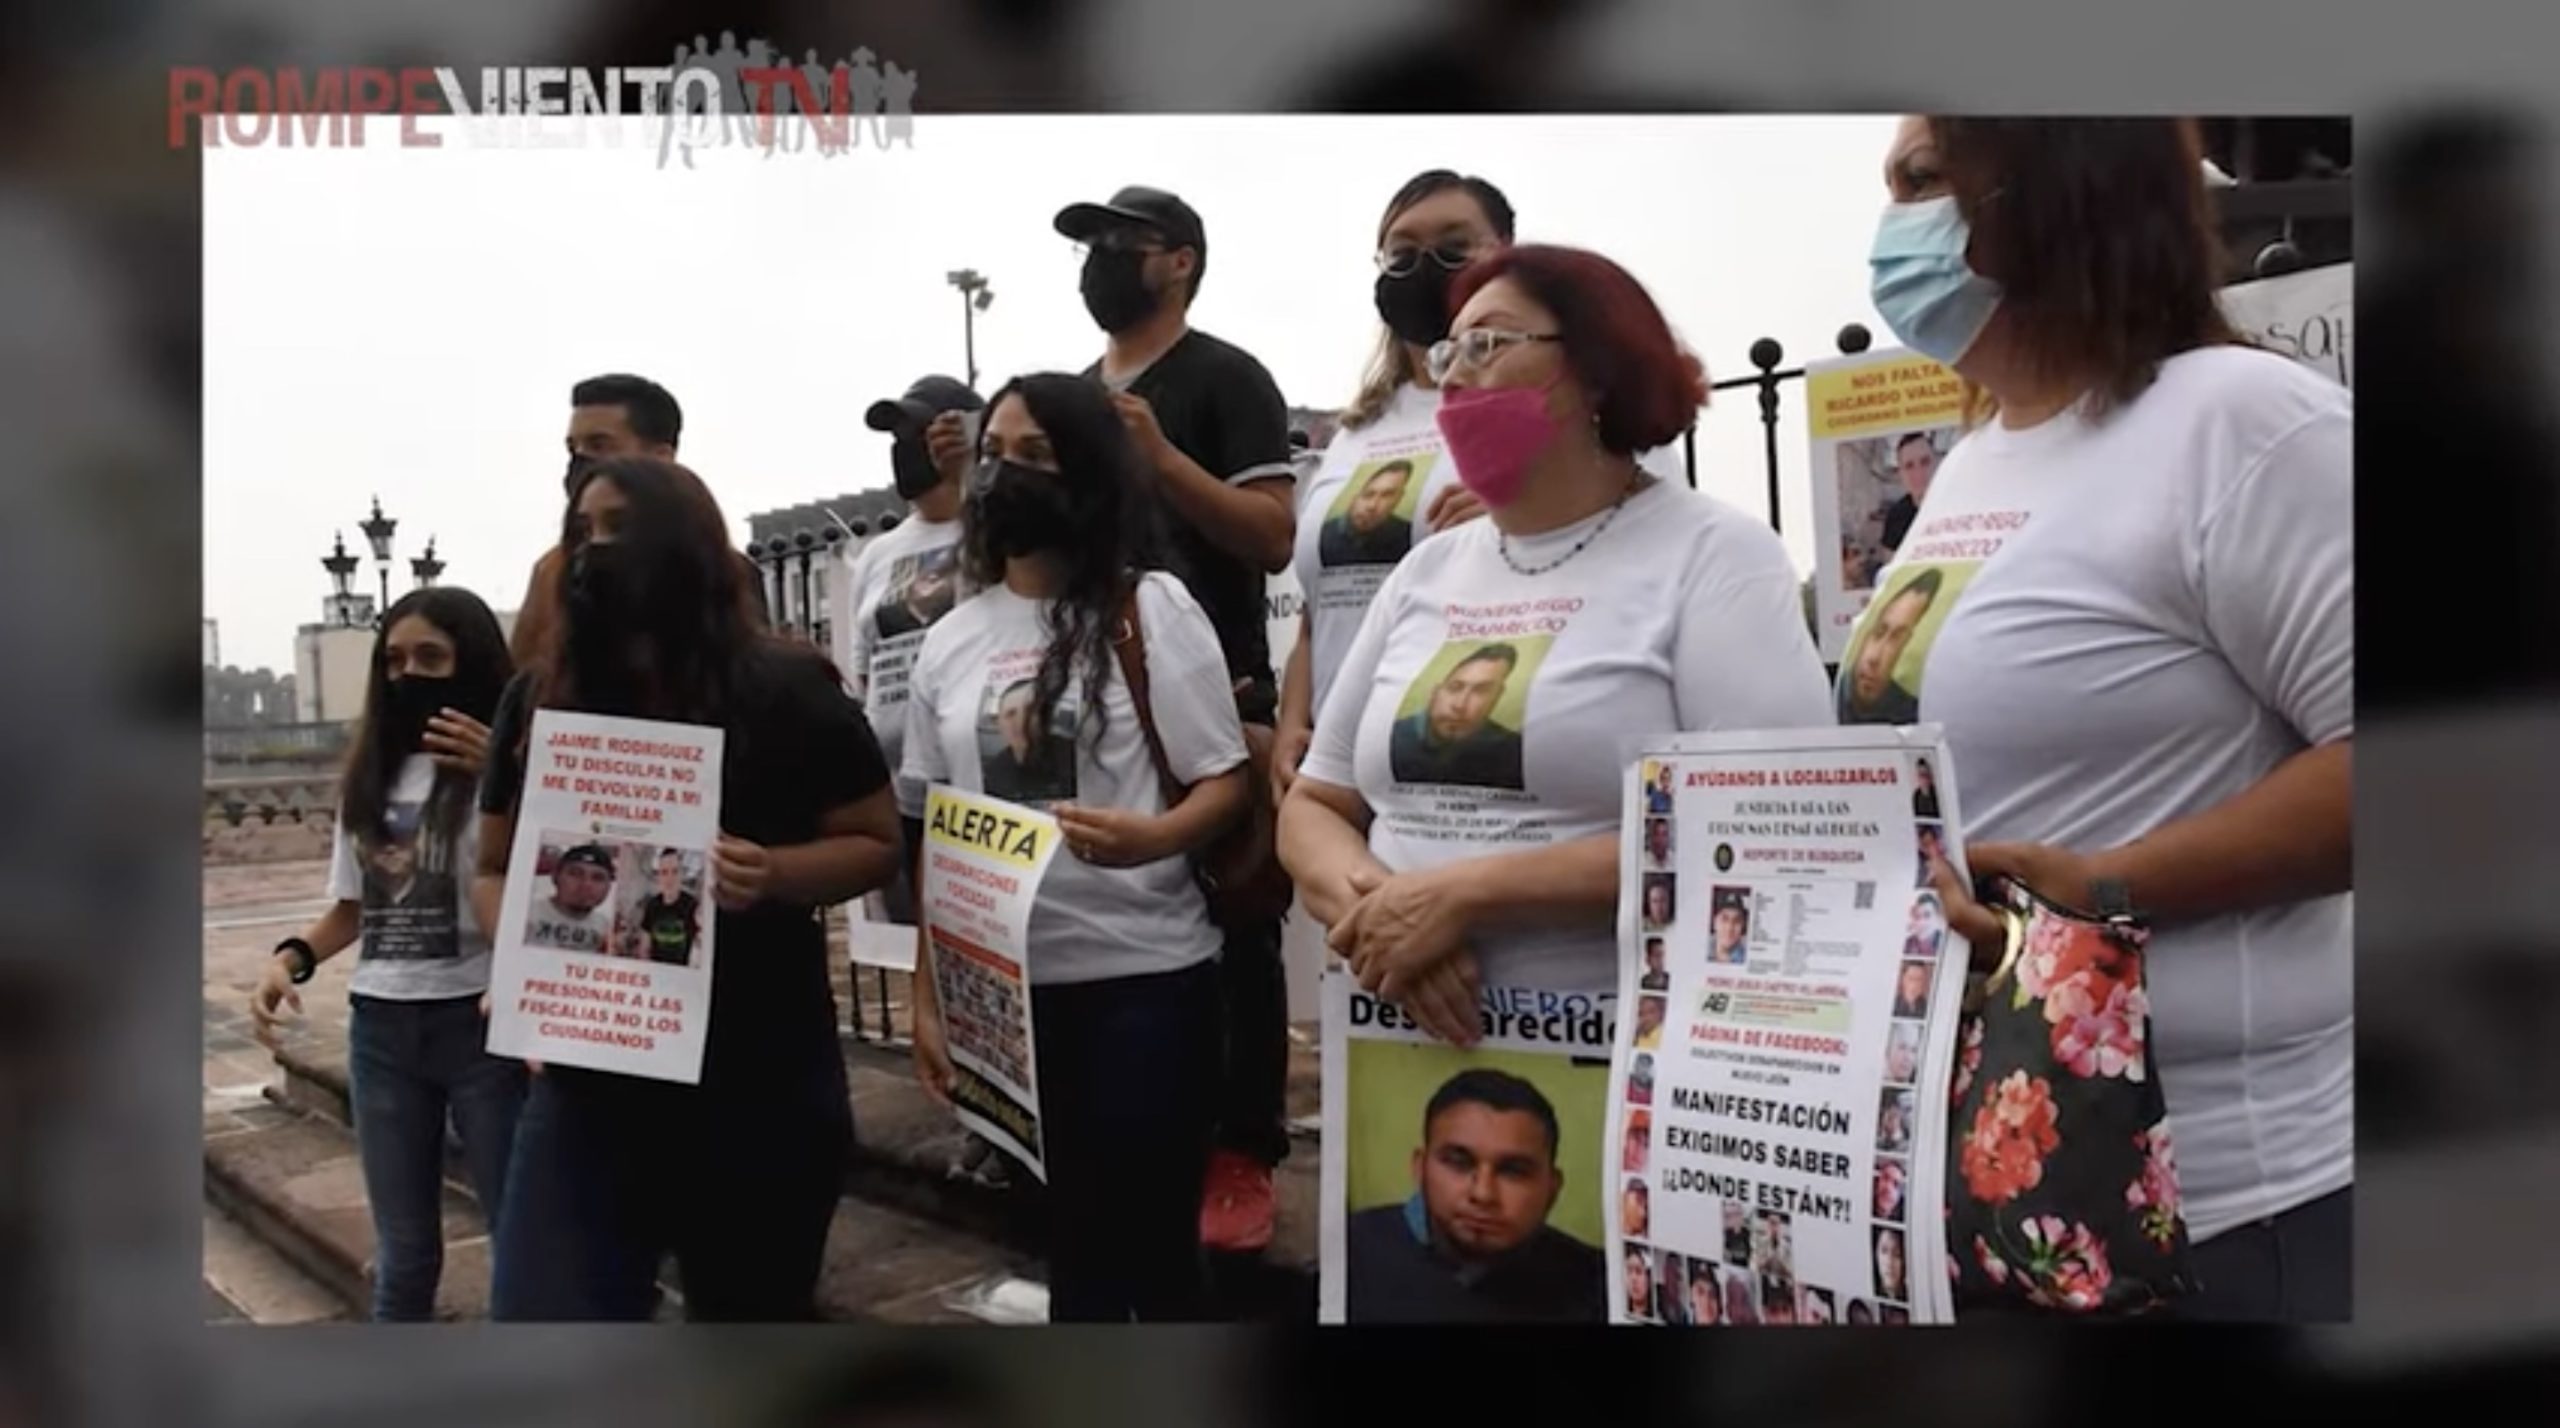 Las madres buscadoras y la crisis de desaparecidos en México ❘ Videocolumna ❘ Pietro Ameglio